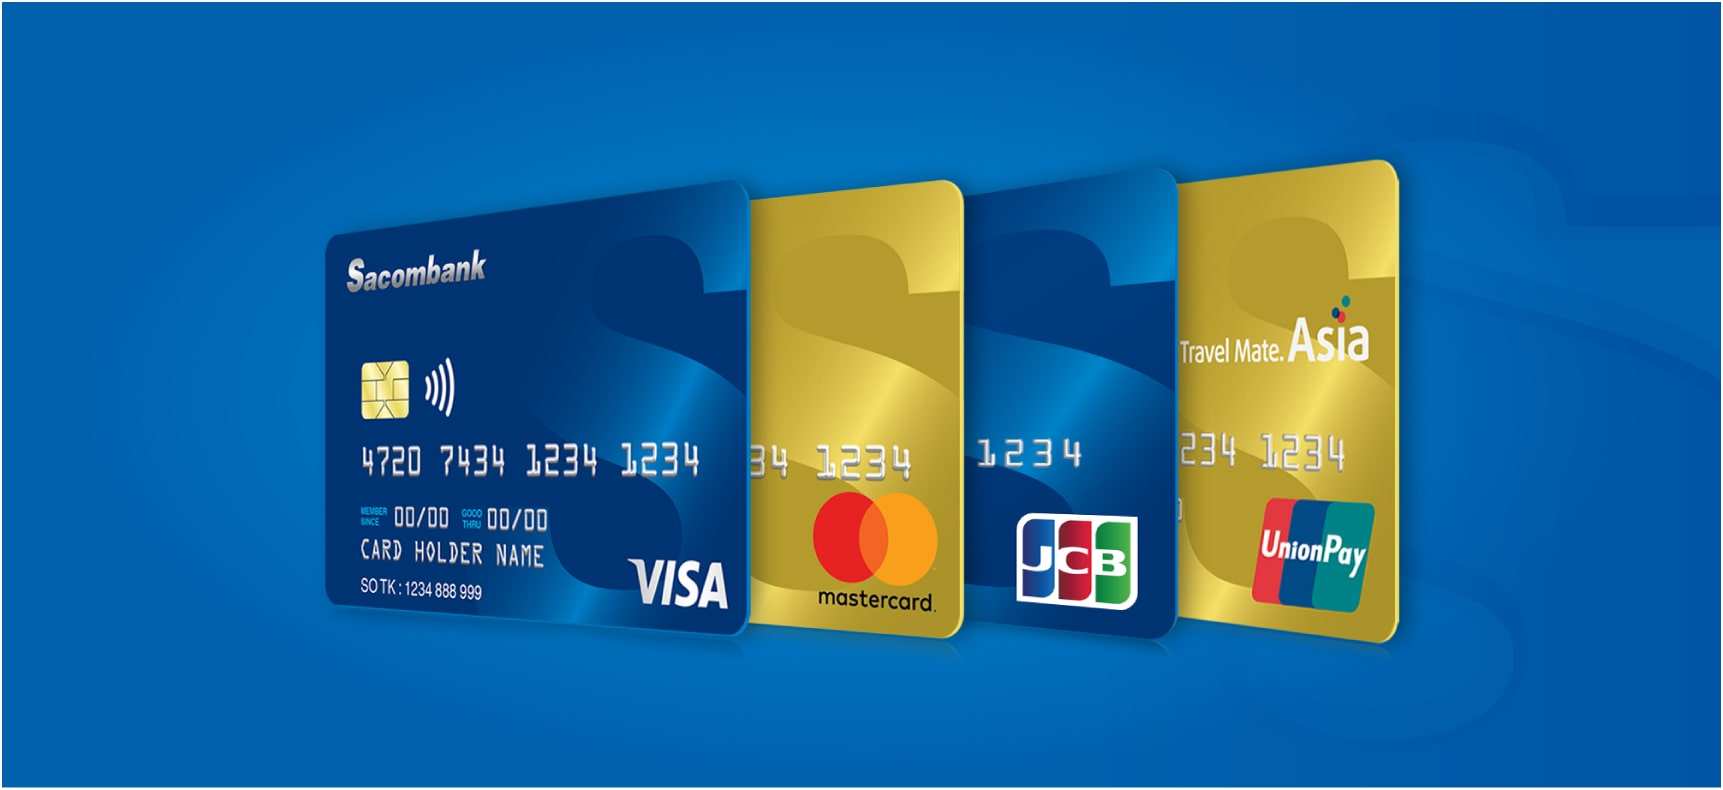 Phí dịch vụ thẻ Sacombank hiện nay là bao nhiêu?